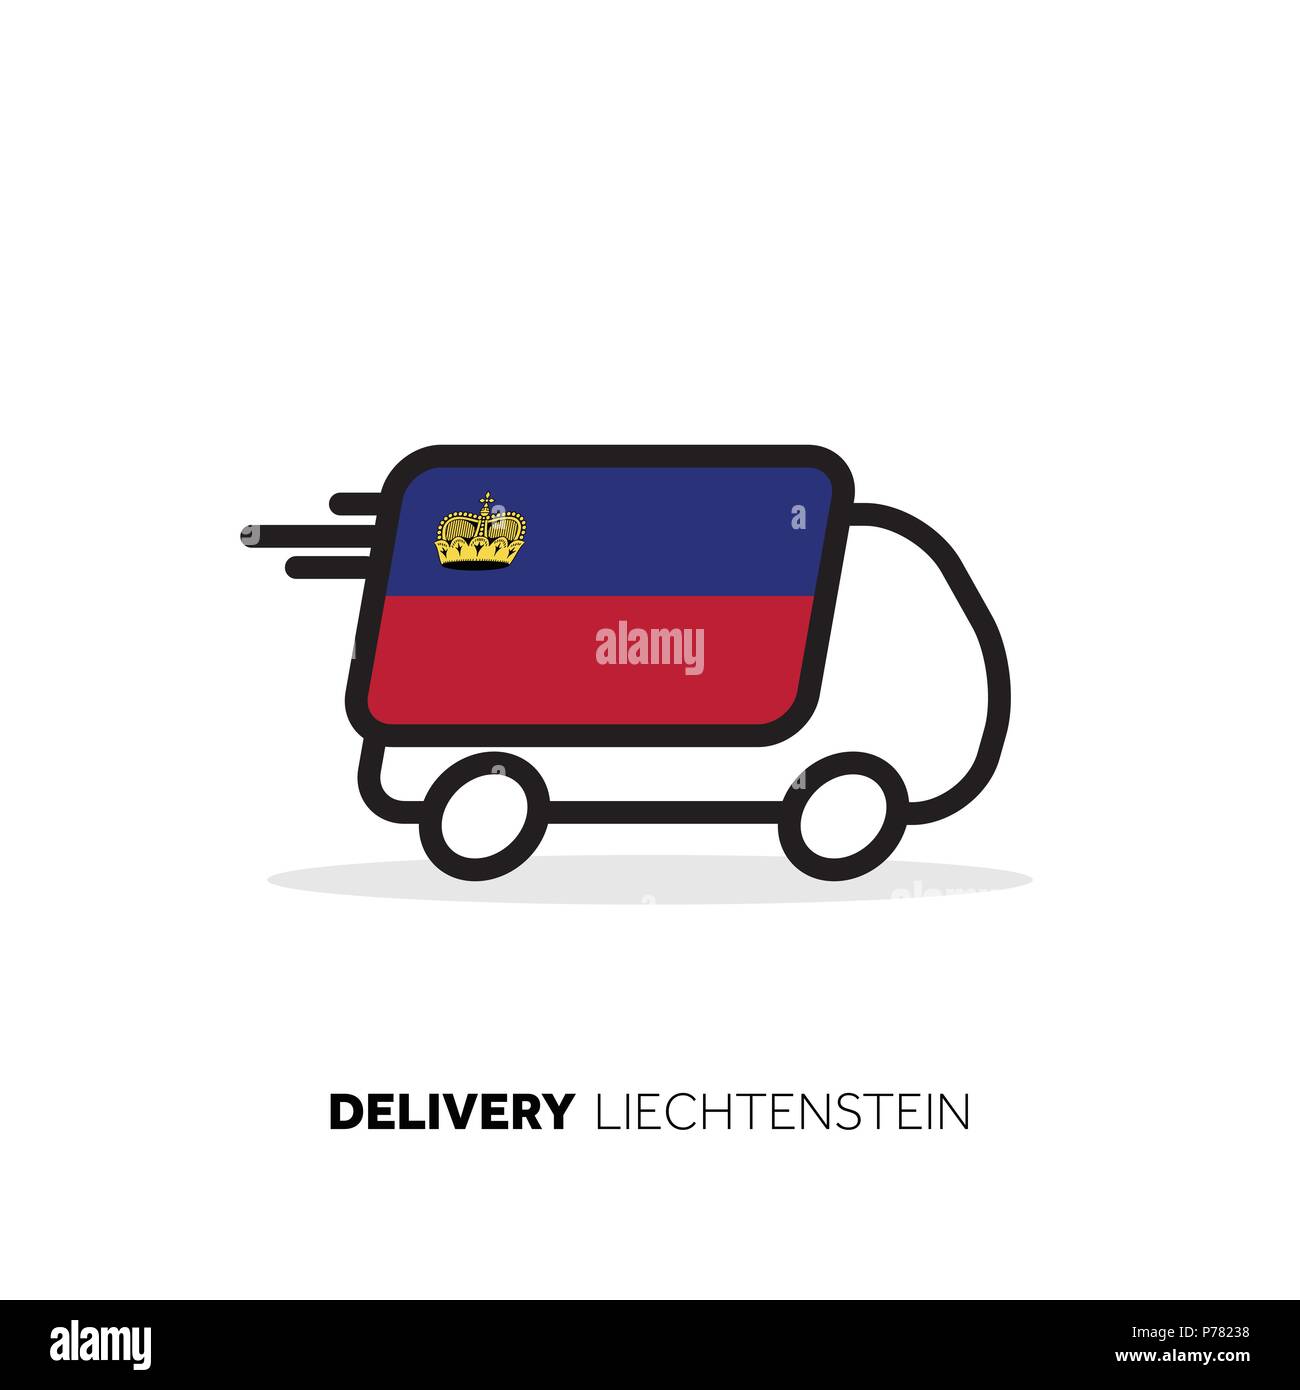 Lietchtenstein delivery van. Country logistics concept Stock Vector